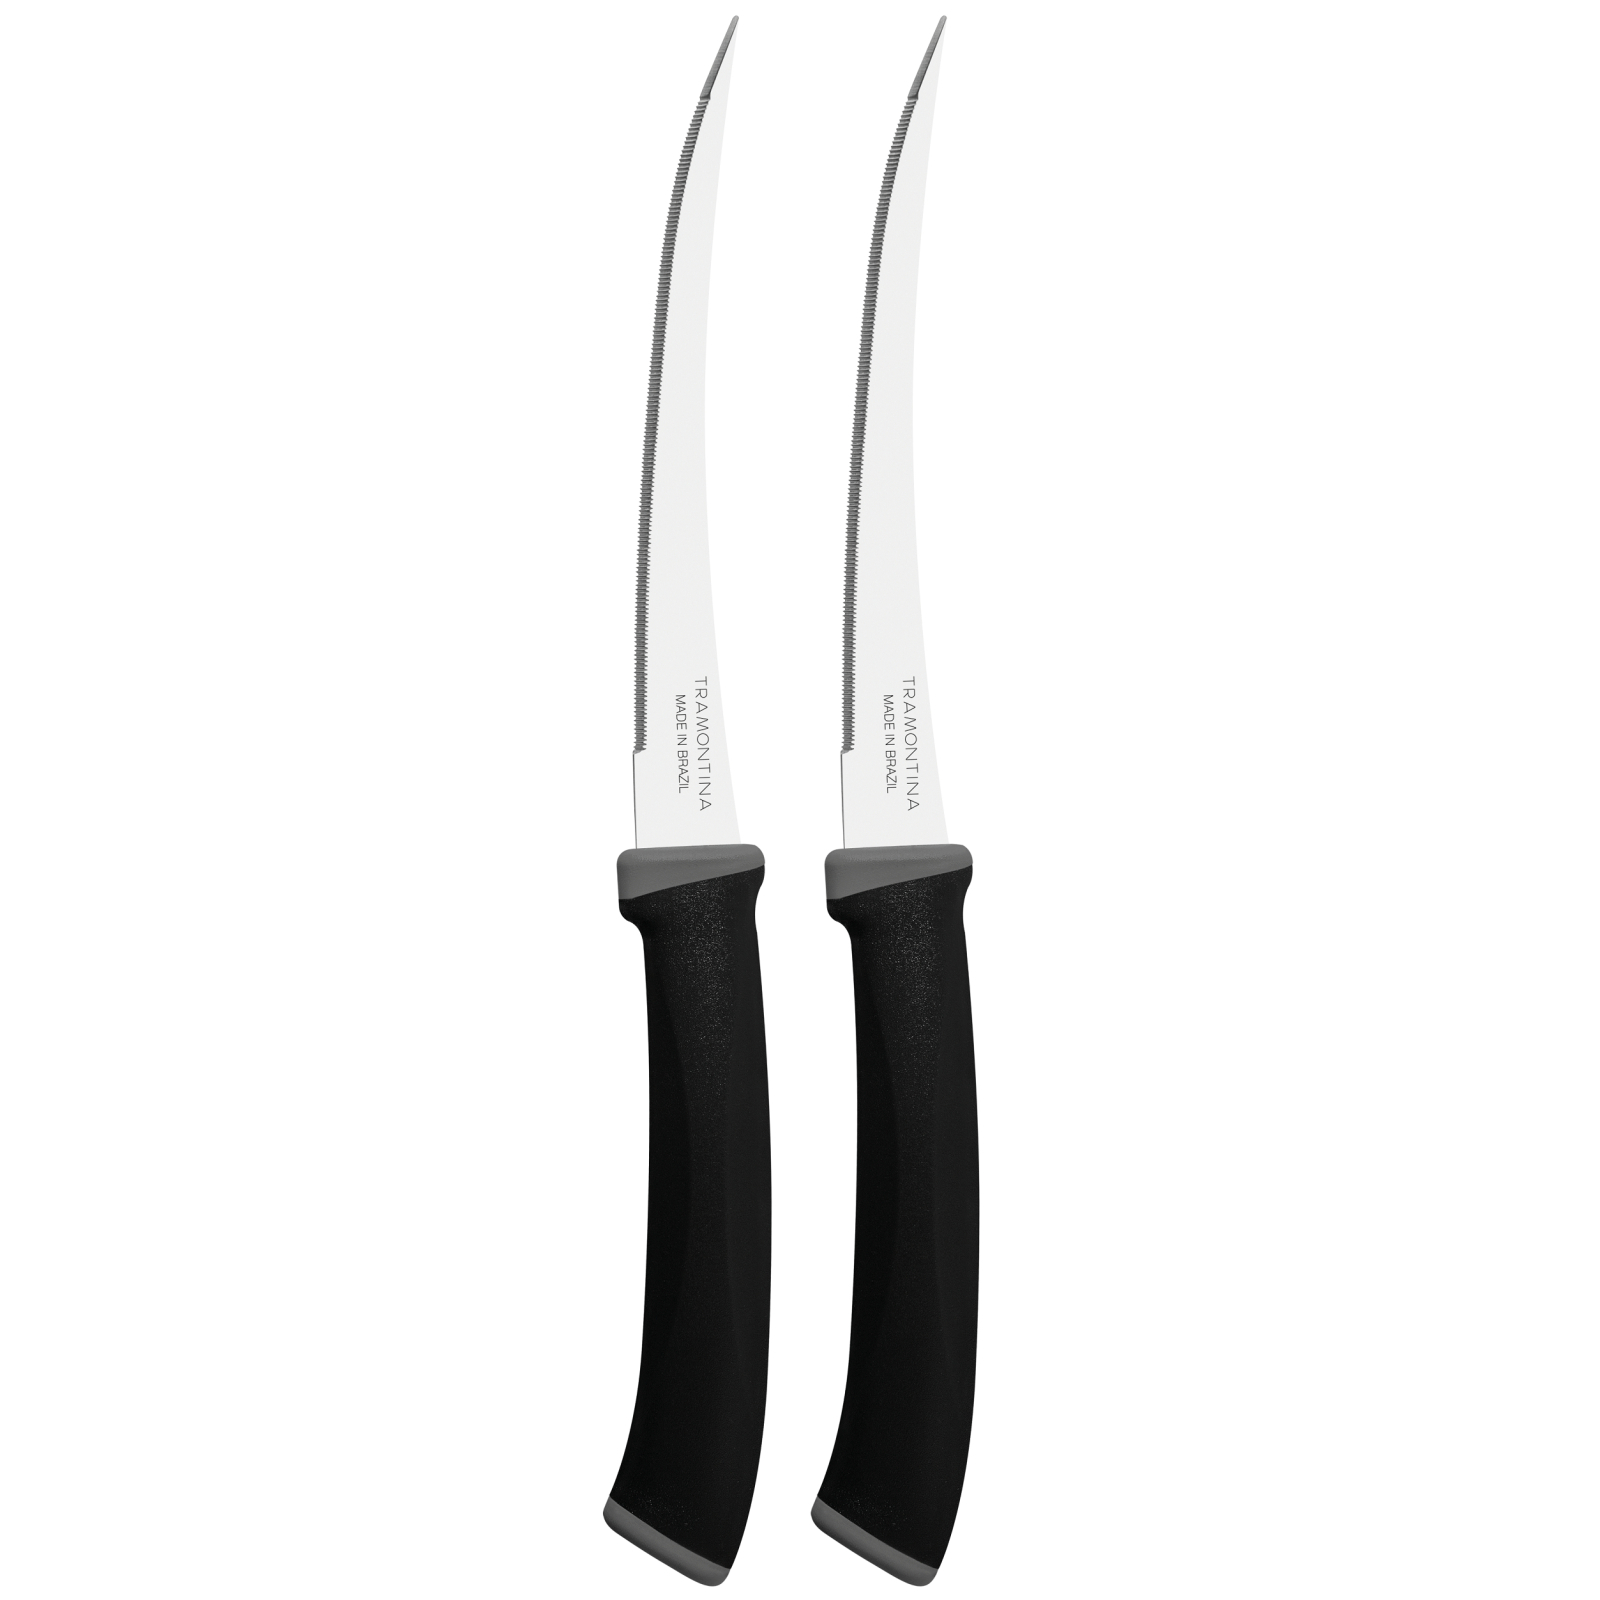 Набор ножей Tramontina Felice Black Tomato 127 мм 2 шт (23495/205)